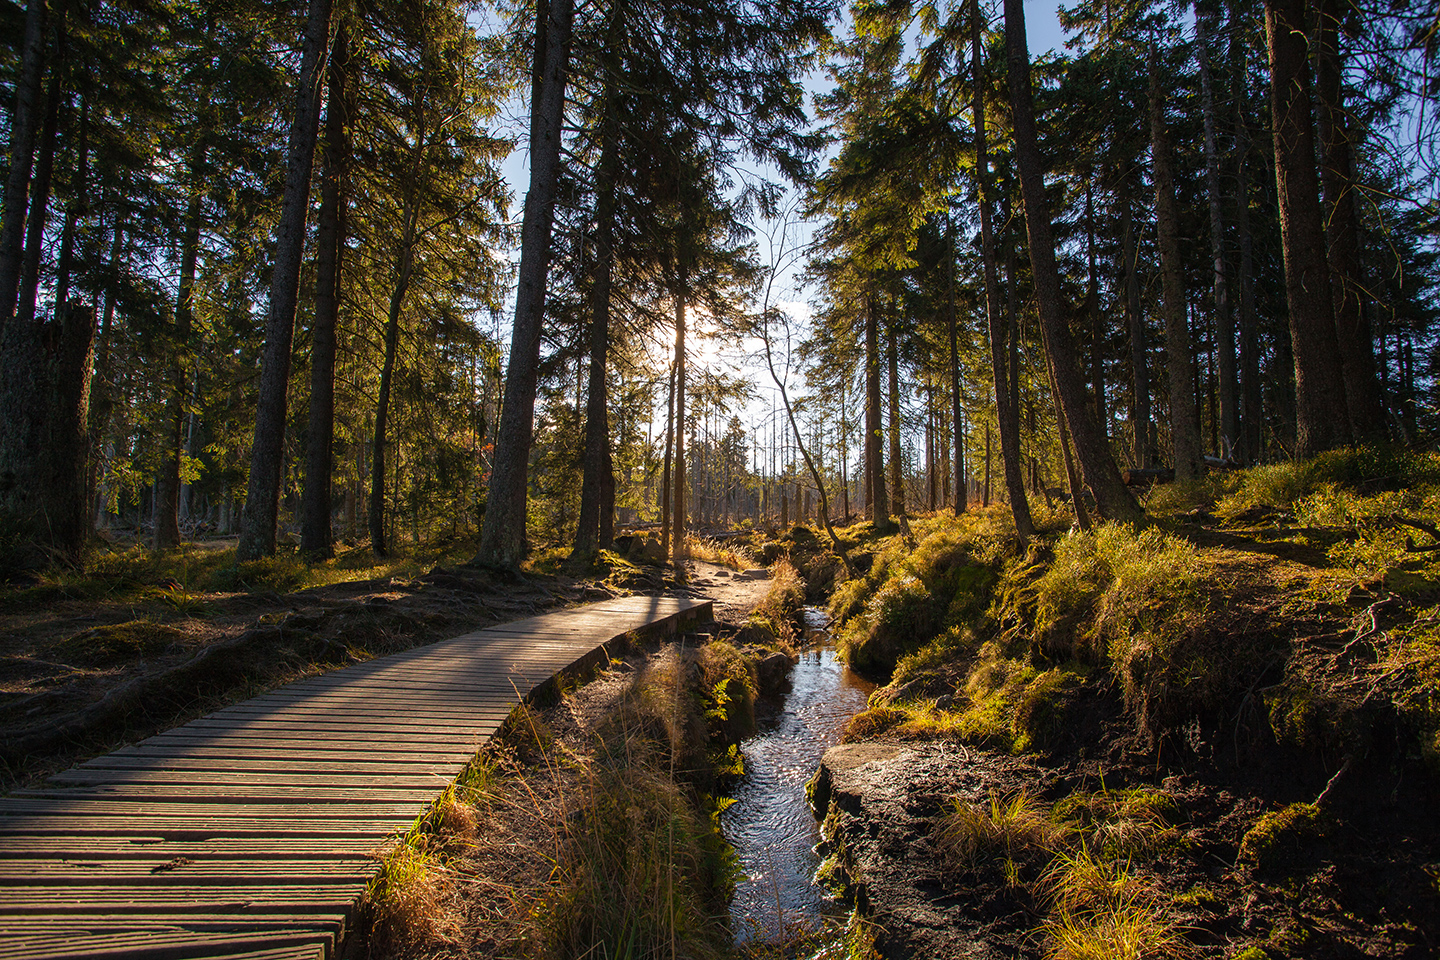 Ein idyllischer Wanderweg durch einen Wald in Deutschland. Ein Fluss fließt neben dem Holzsteg, der durch die hohen Bäume führt. Die untergehende Sonne zaubert ein wundervolles Licht. 